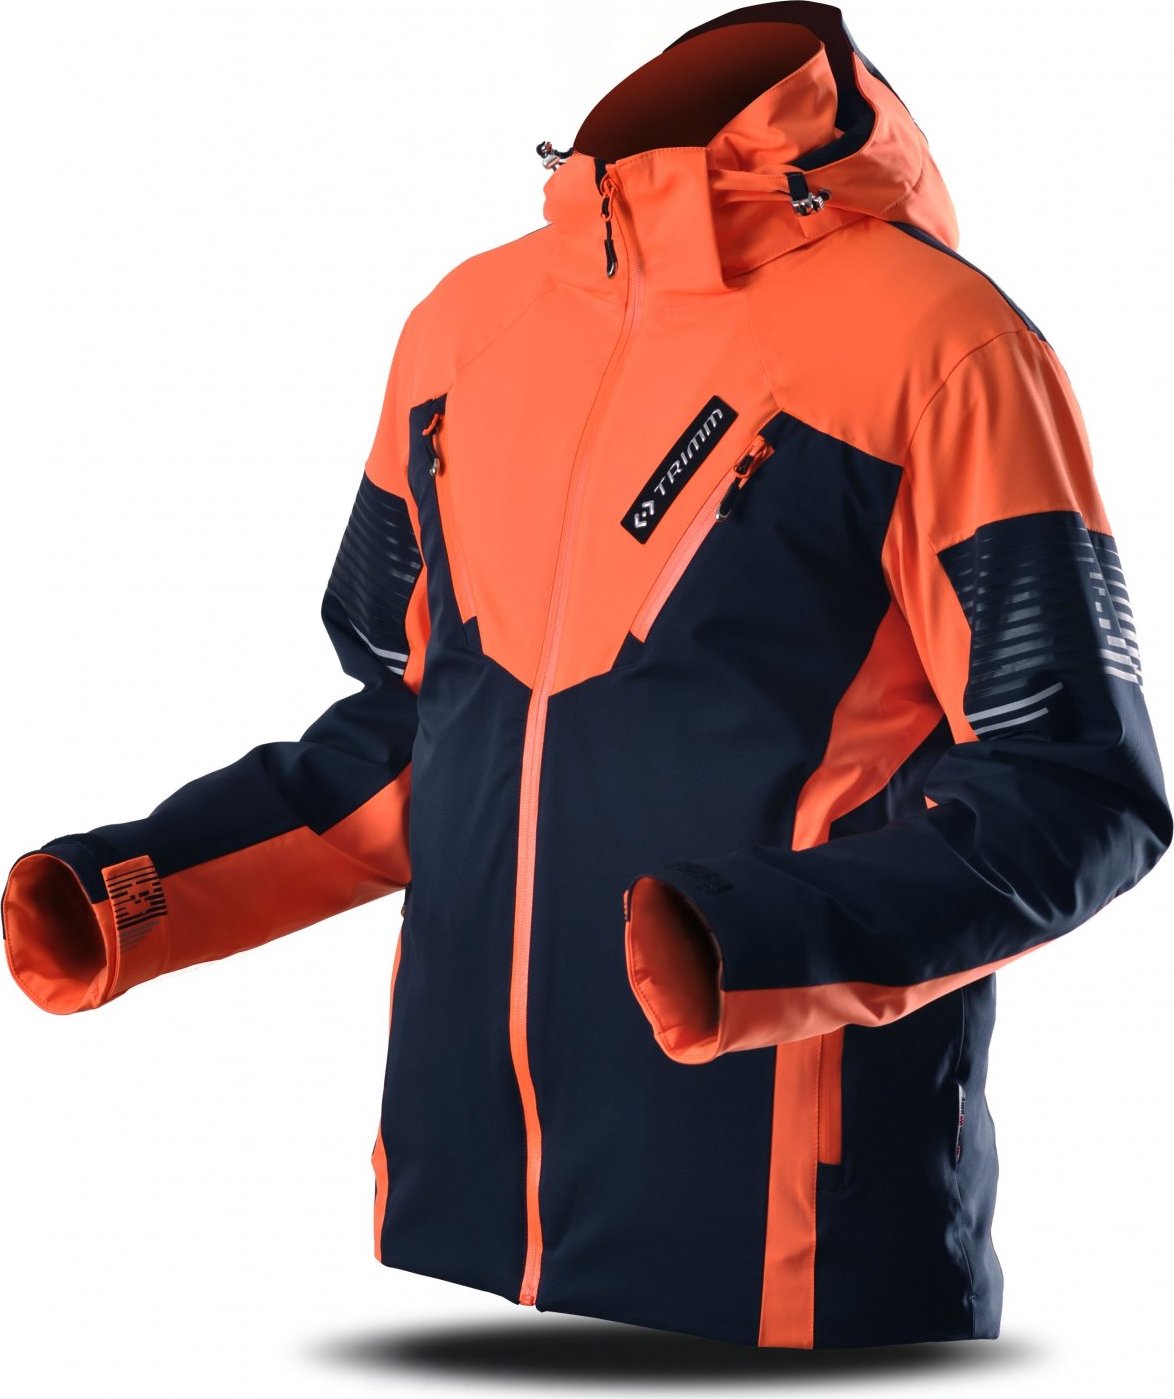 Pánská lyžařská bunda TRIMM Avalon dark blue/signal orange Velikost: XXL, Barva: dark blue/signal orange